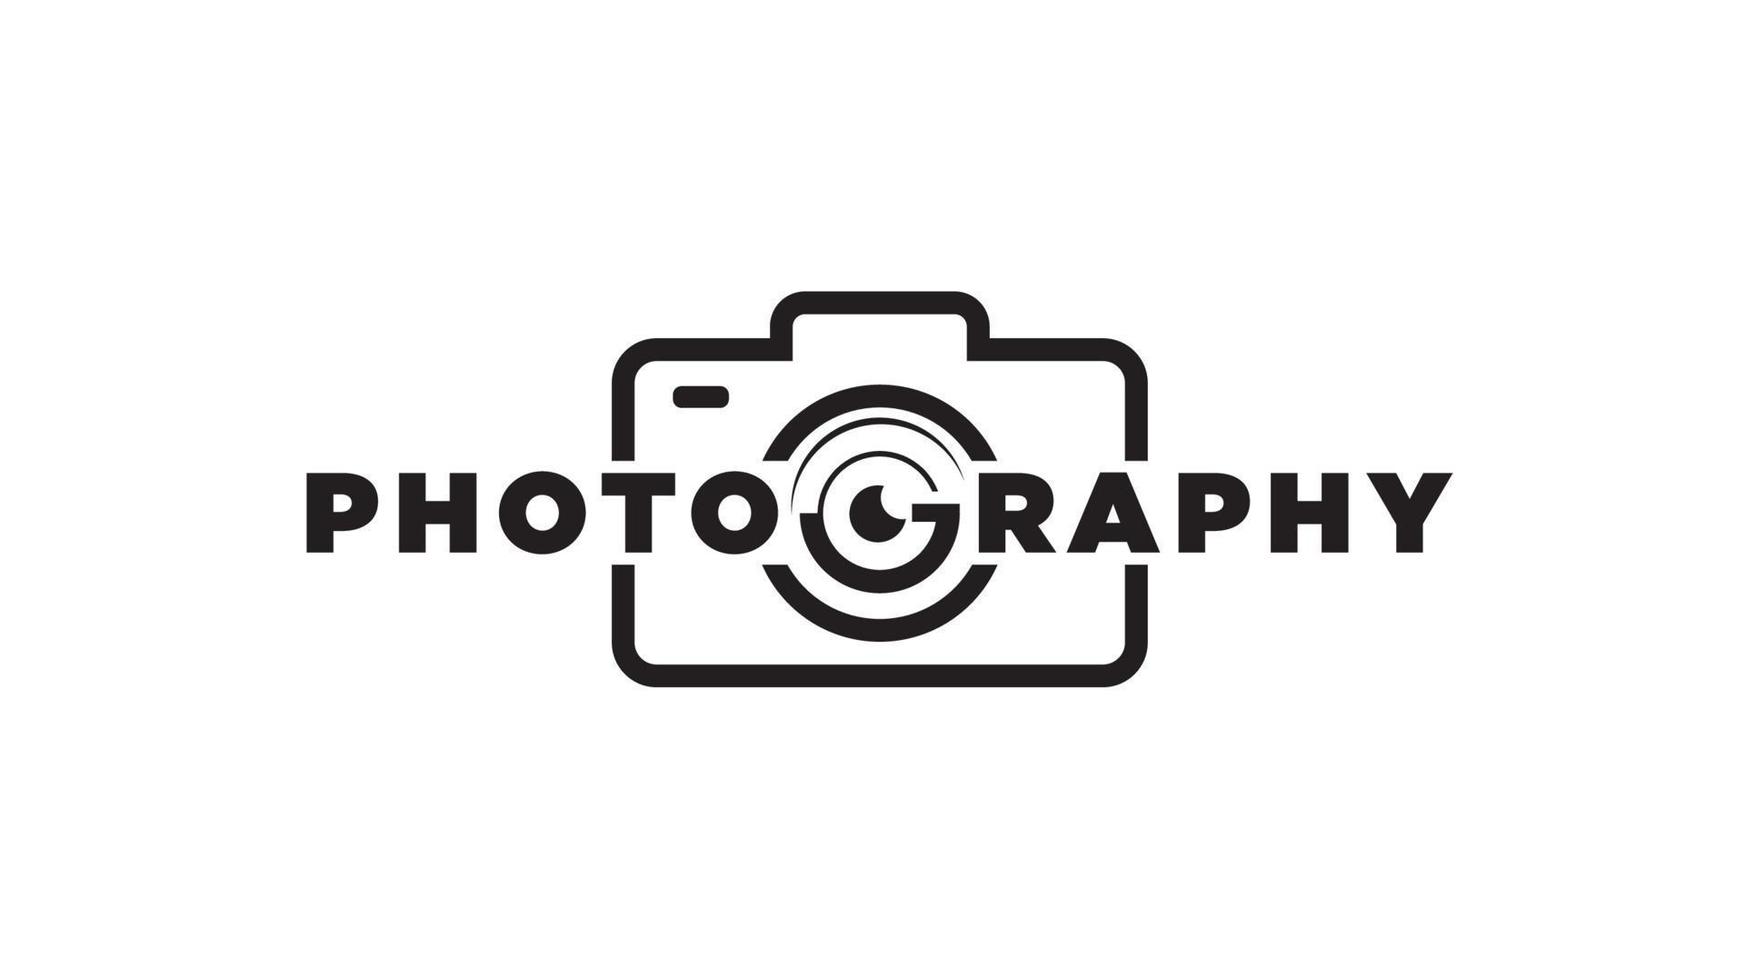 fotografi design logotyp företagsnamn vektor